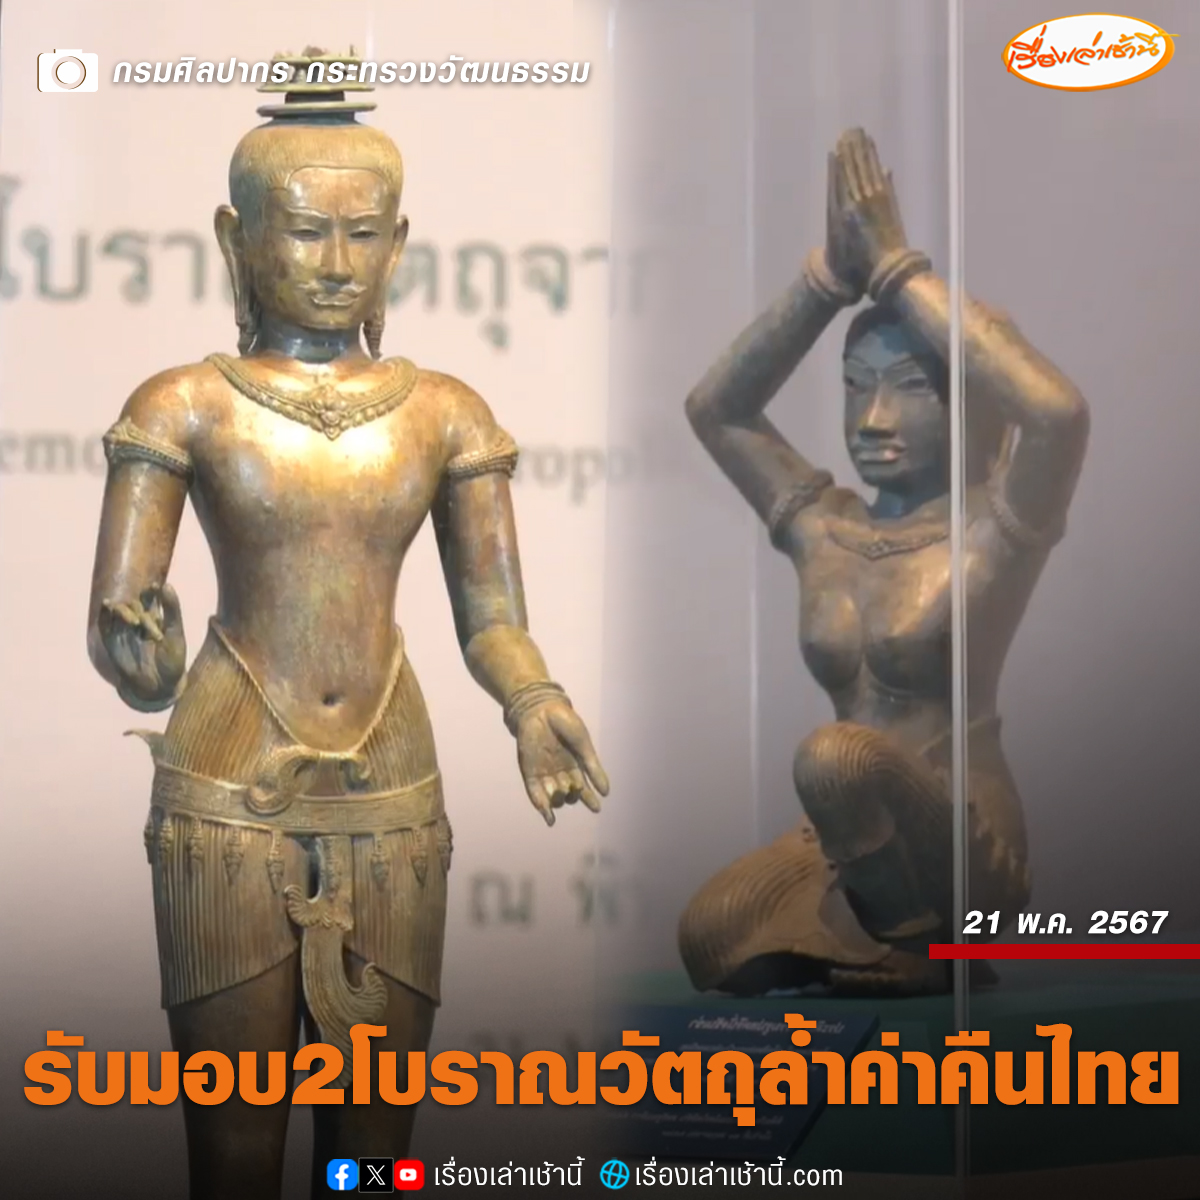 รมว.วัฒนธรรม รับมอบ “Golden Boy-สตรีพนมมือ” จากพิพิธภัณฑ์ศิลปะเมโทรโพลิทัน สหรัฐฯ กลับคืนสู่ไทย เปิดแสดพรุ่งนี้ ที่พิพิธภัณฑสถานแห่งชาติ พระนคร ด้านอธิบดีกรมศิลปากร ไม่ปฏิเสธคำบอกเล่า Golden Boy ต้องมีอัญมณี แต่จากการตรวจสอบยังไม่มีหลักฐานยืนยัน อ่านข่าว :